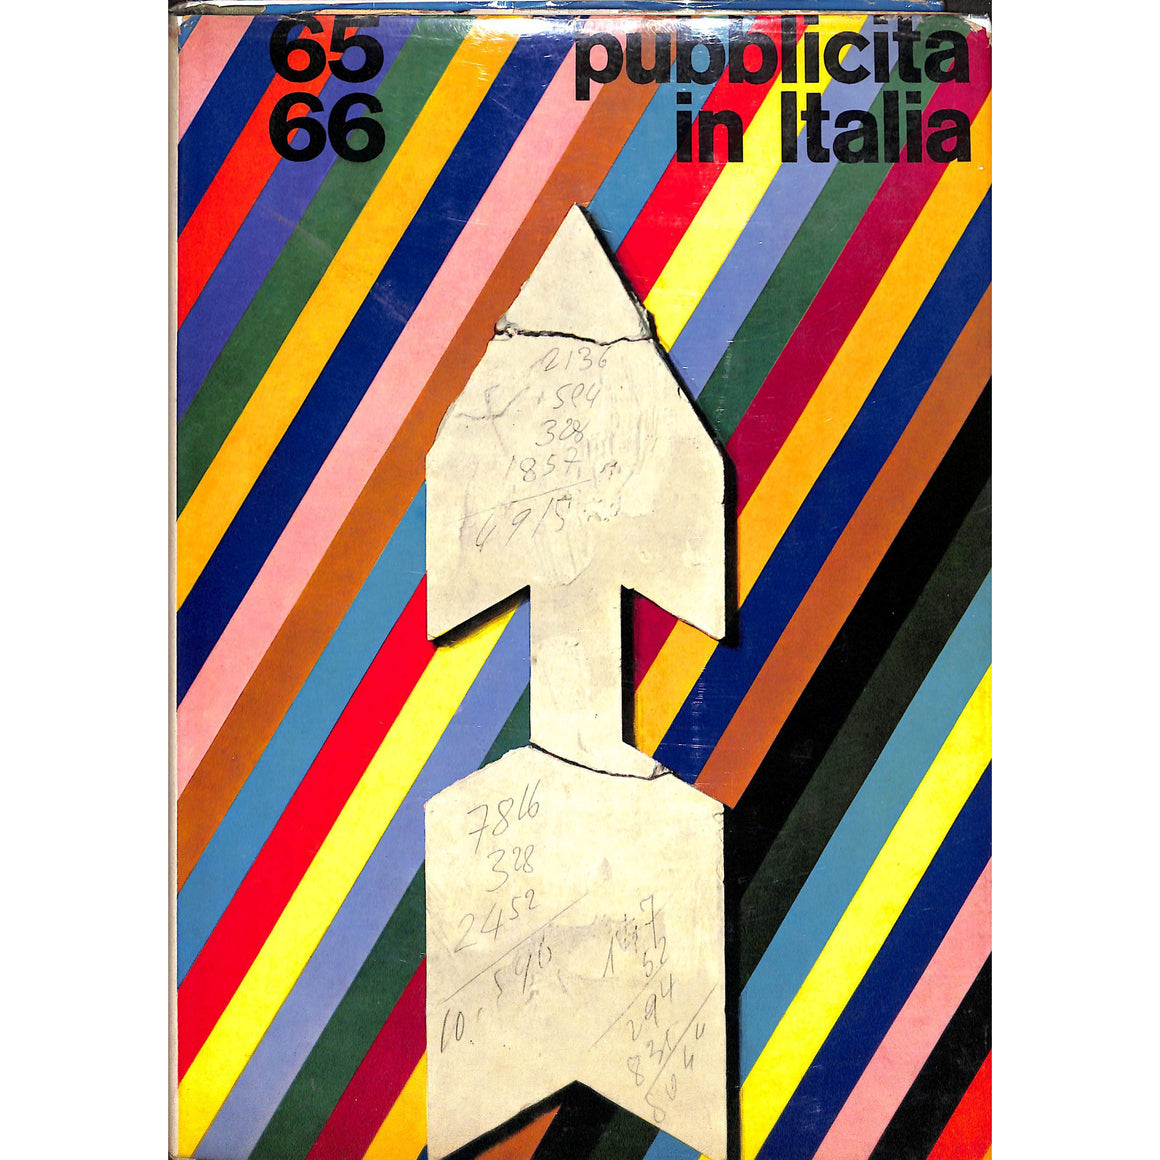 Pubblicita in Italia: 1965-1966